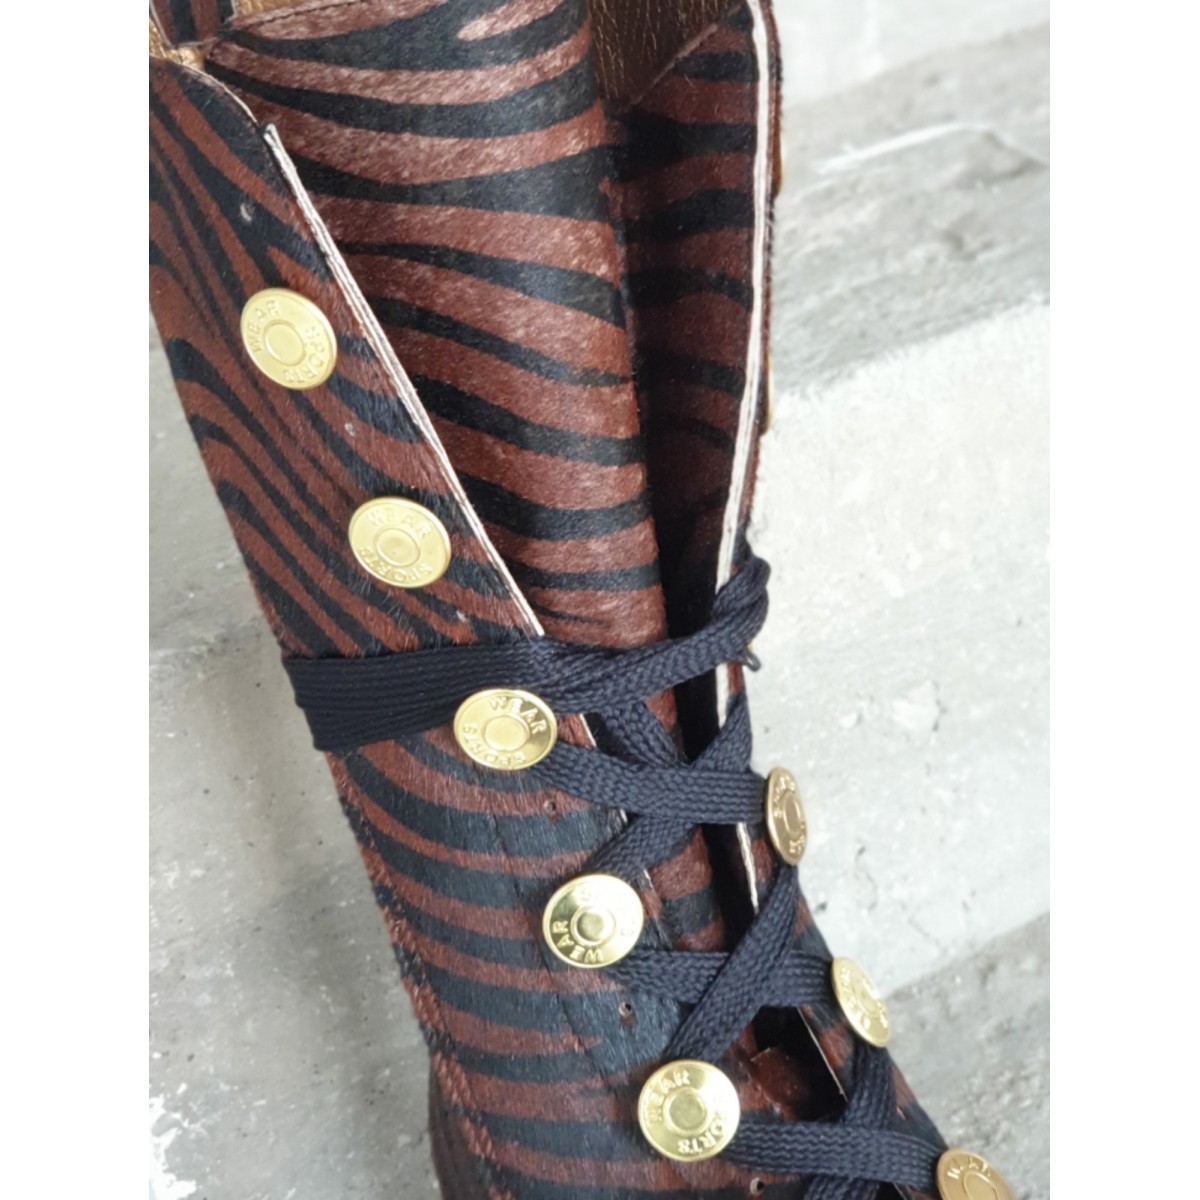 Γυναικείες δετές μπότες pony skin με χρυσά κουμπιά Tessera®